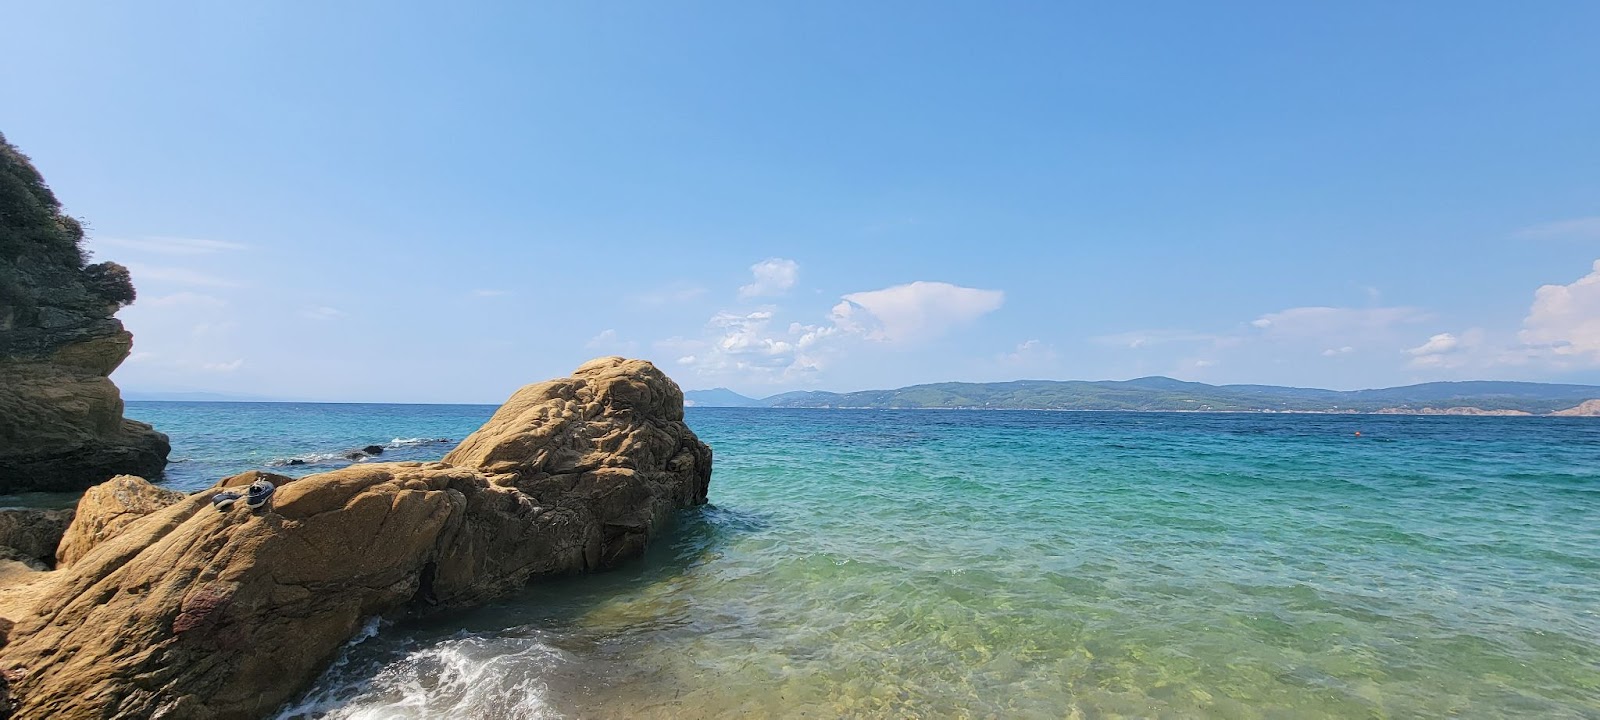 The Beaches of Skiathos, Greece